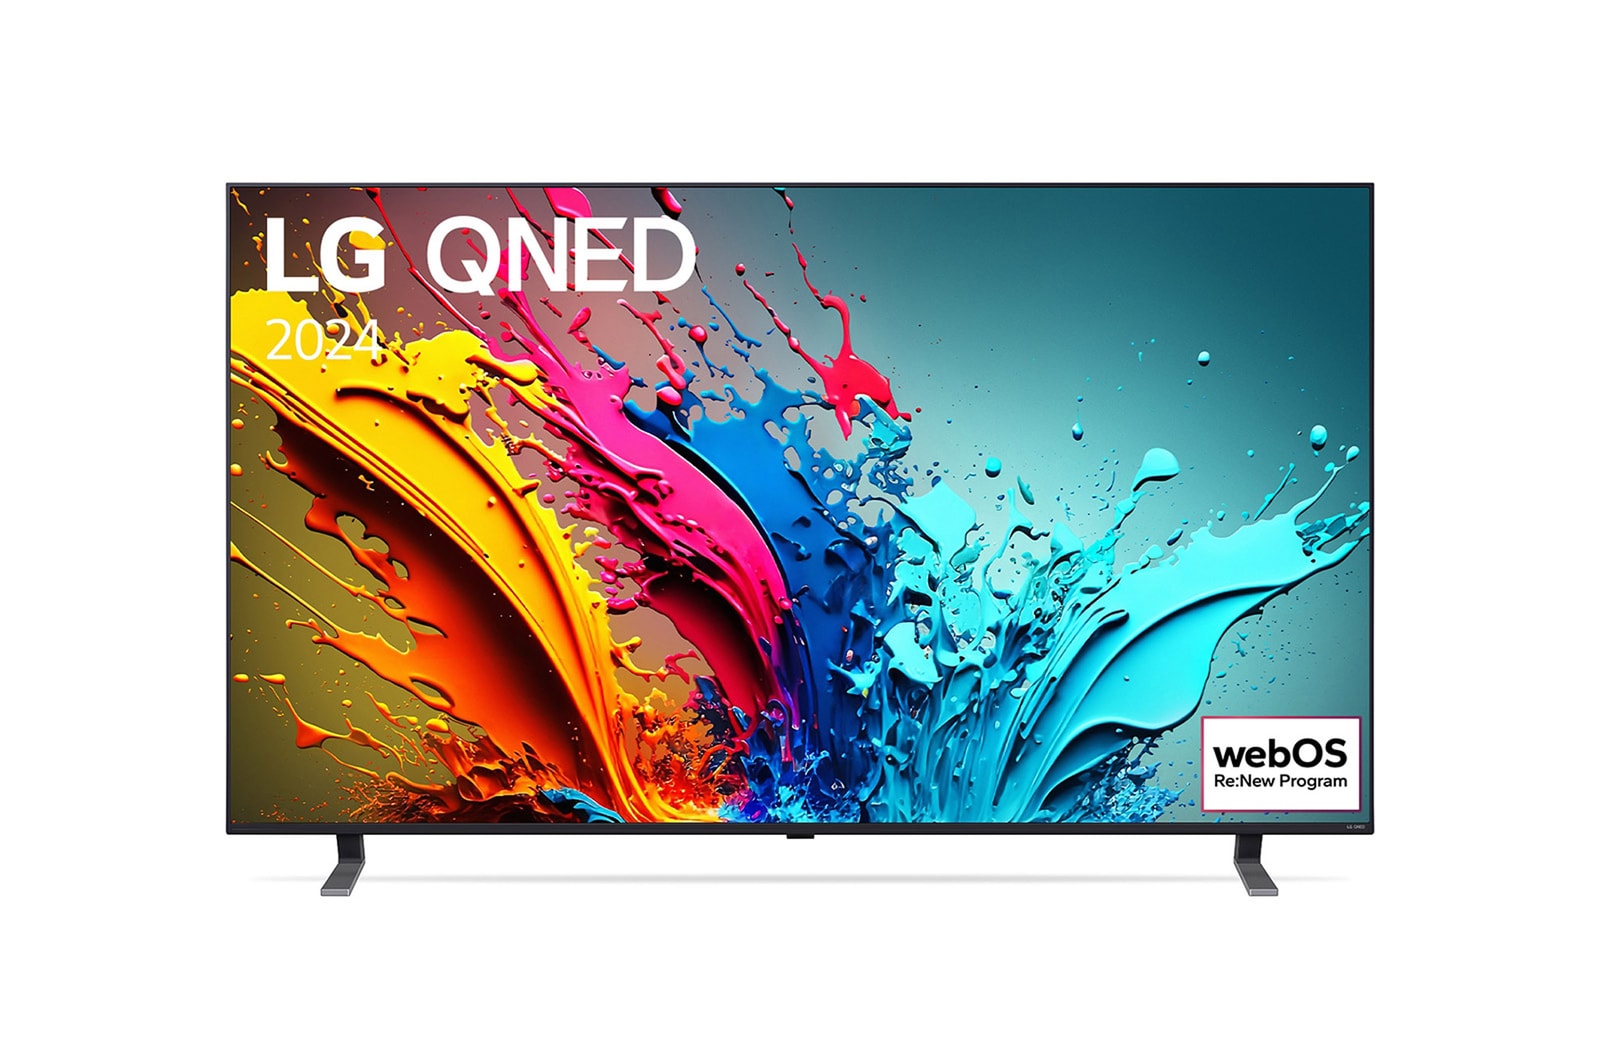 Vue de face de la TV LG QNED, QNED85 avec le texte LG QNED, 2024 et le logo webOS Re:New Program à l’écran.